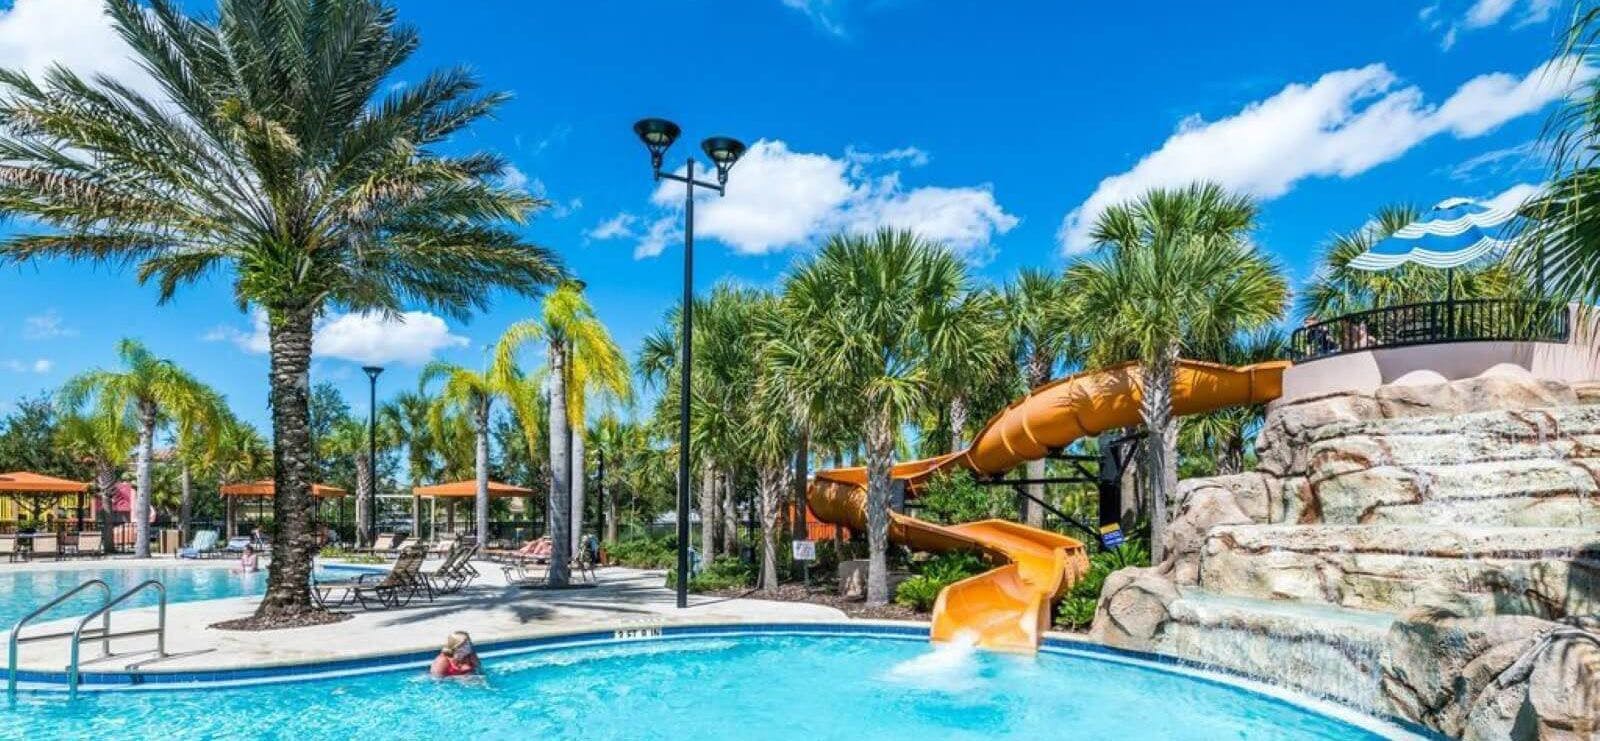 solterra-resort-vacation-rentals-resort-pool-with-slide.jpg